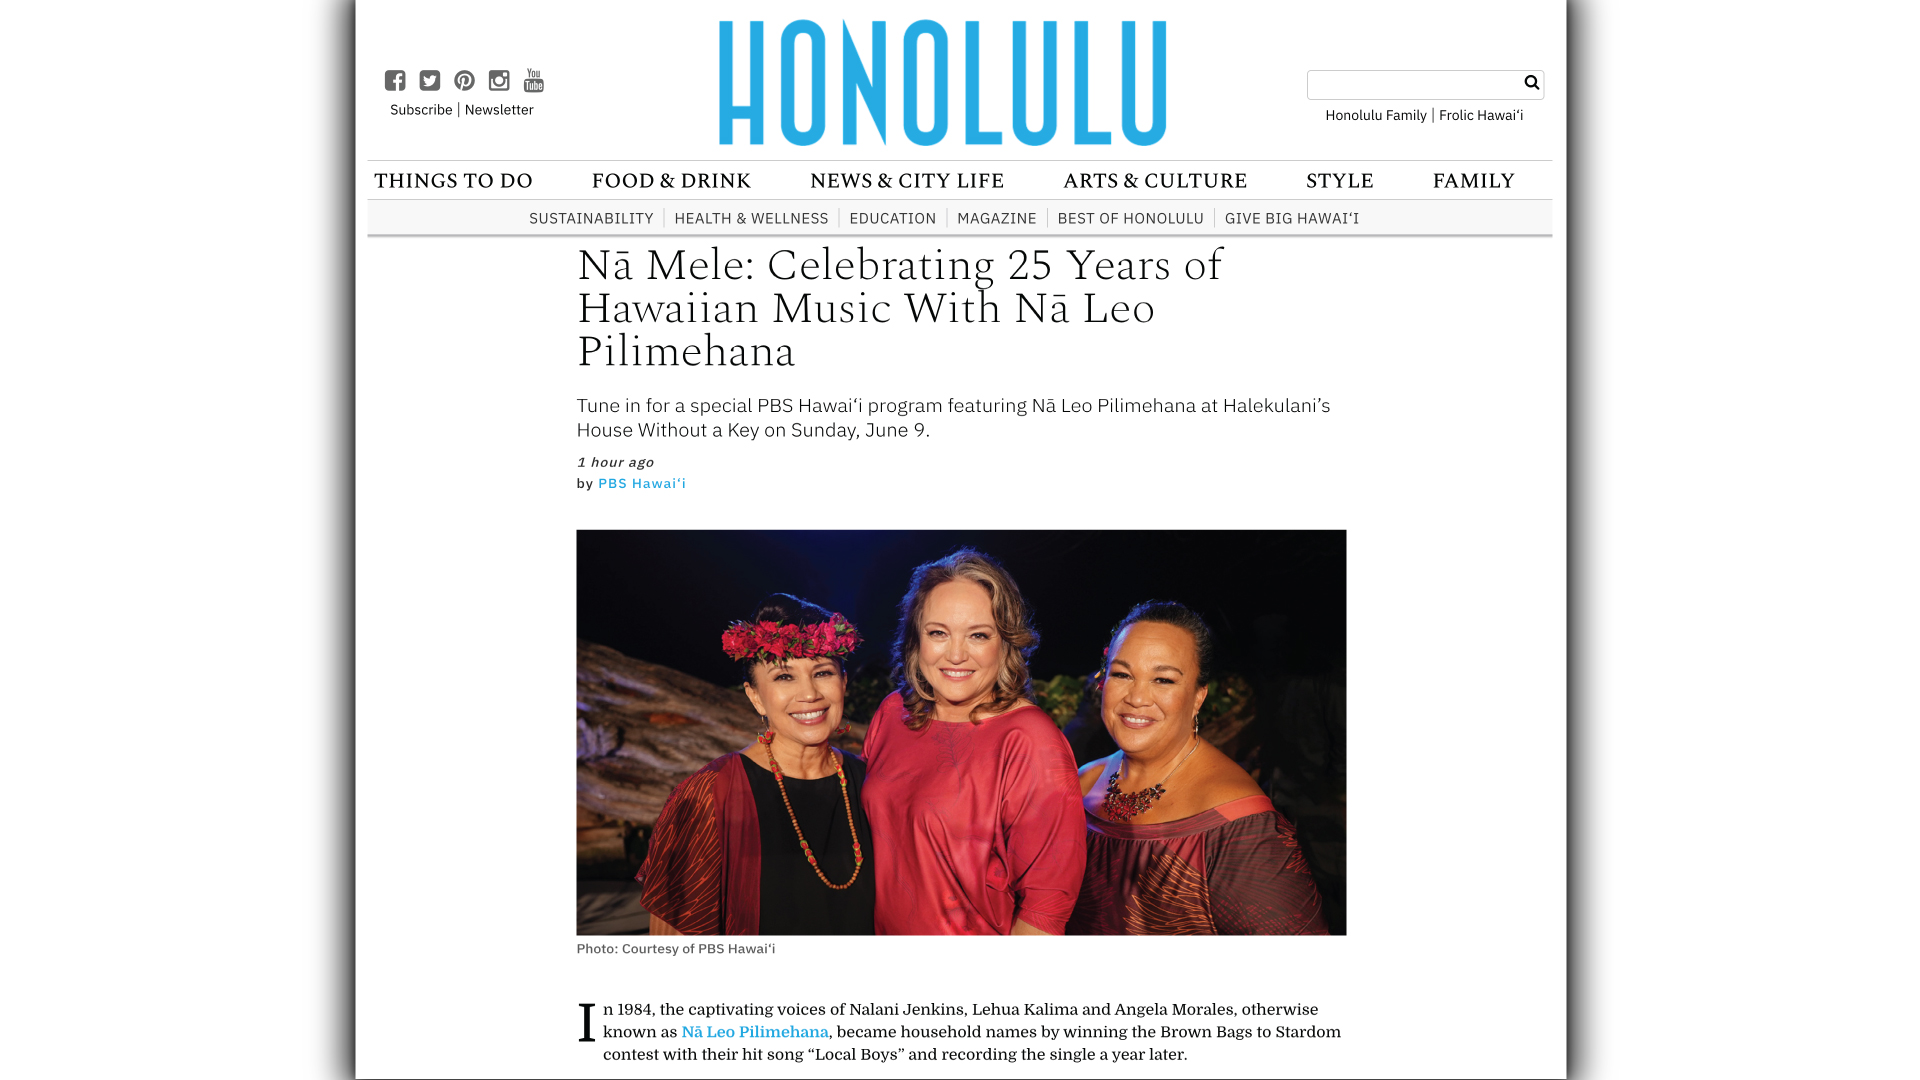 Nā Mele: Celebrating 25 Years of Hawaiian Music With Nā Leo Pilimehana